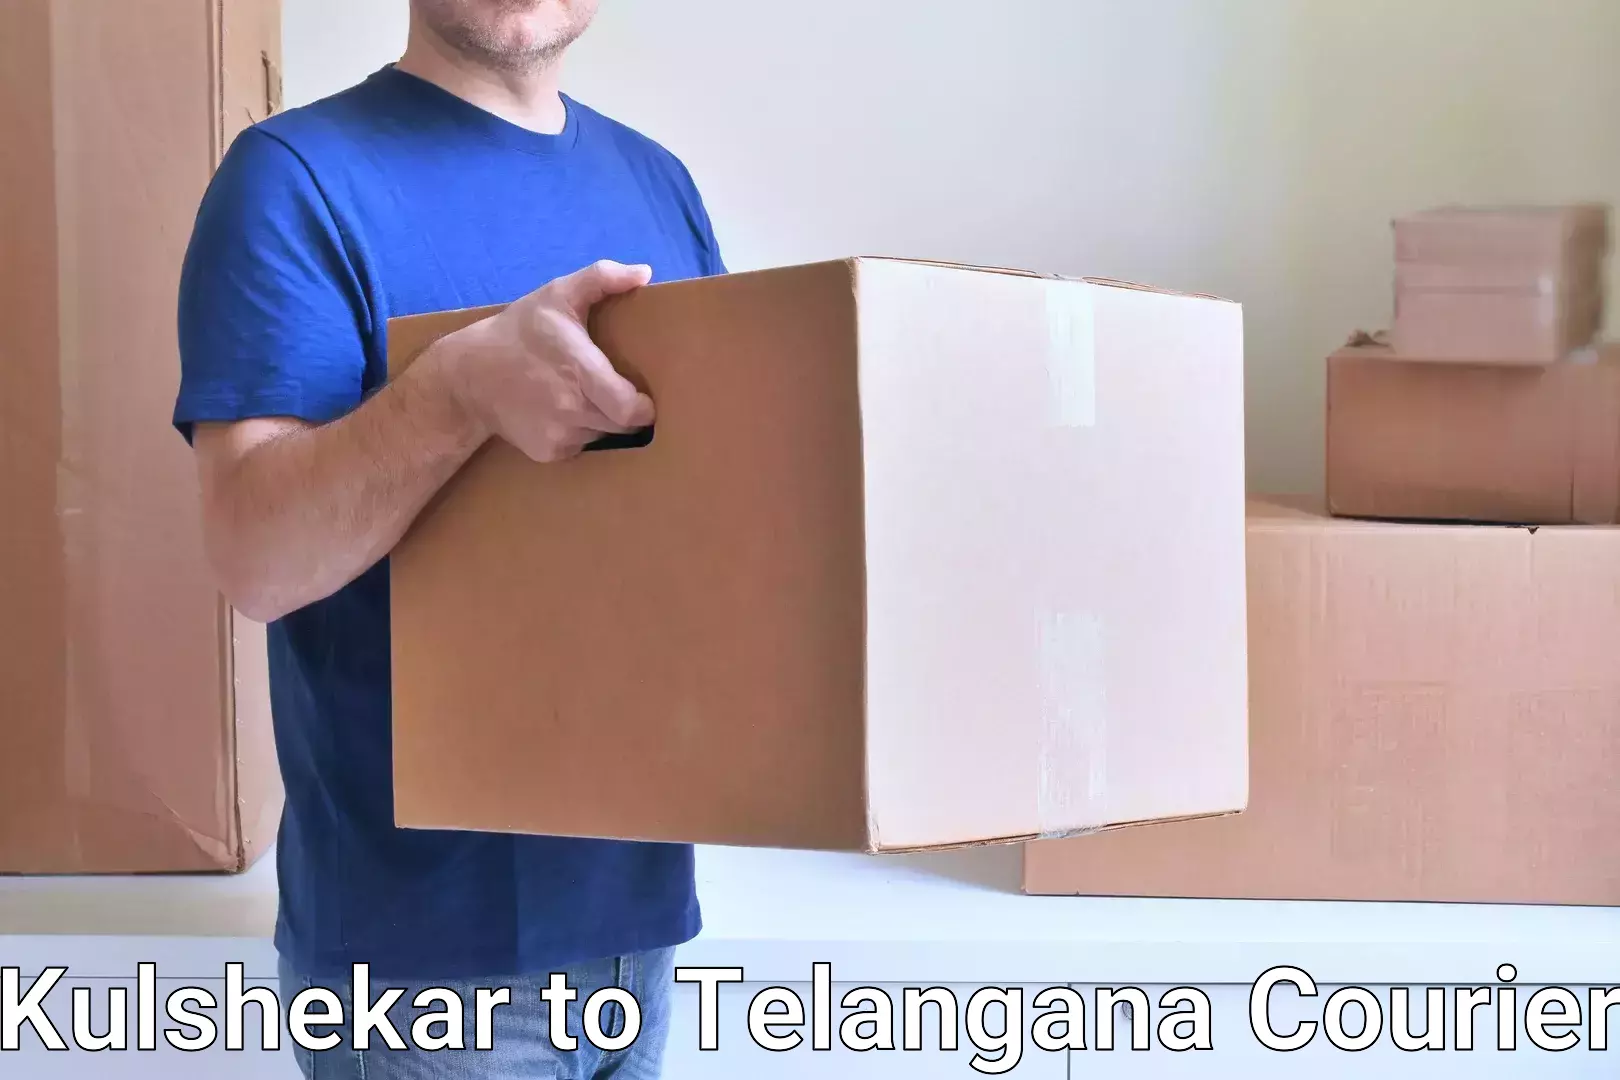 Reliable package handling Kulshekar to Medak